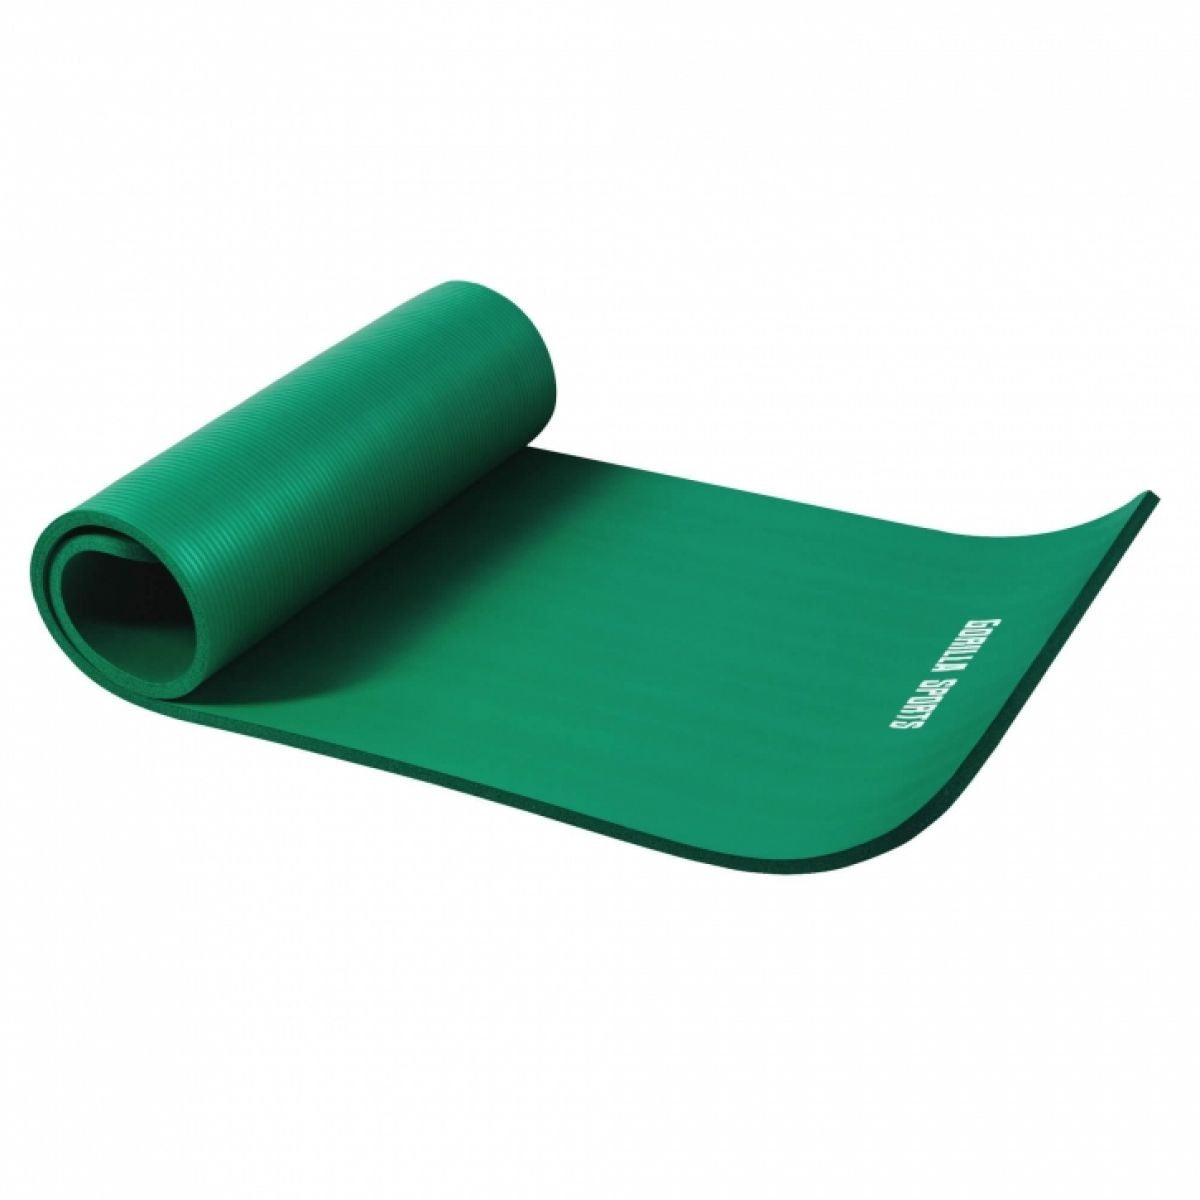 Groen - Yogamat Deluxe 190 x 100 x 1,5 cm